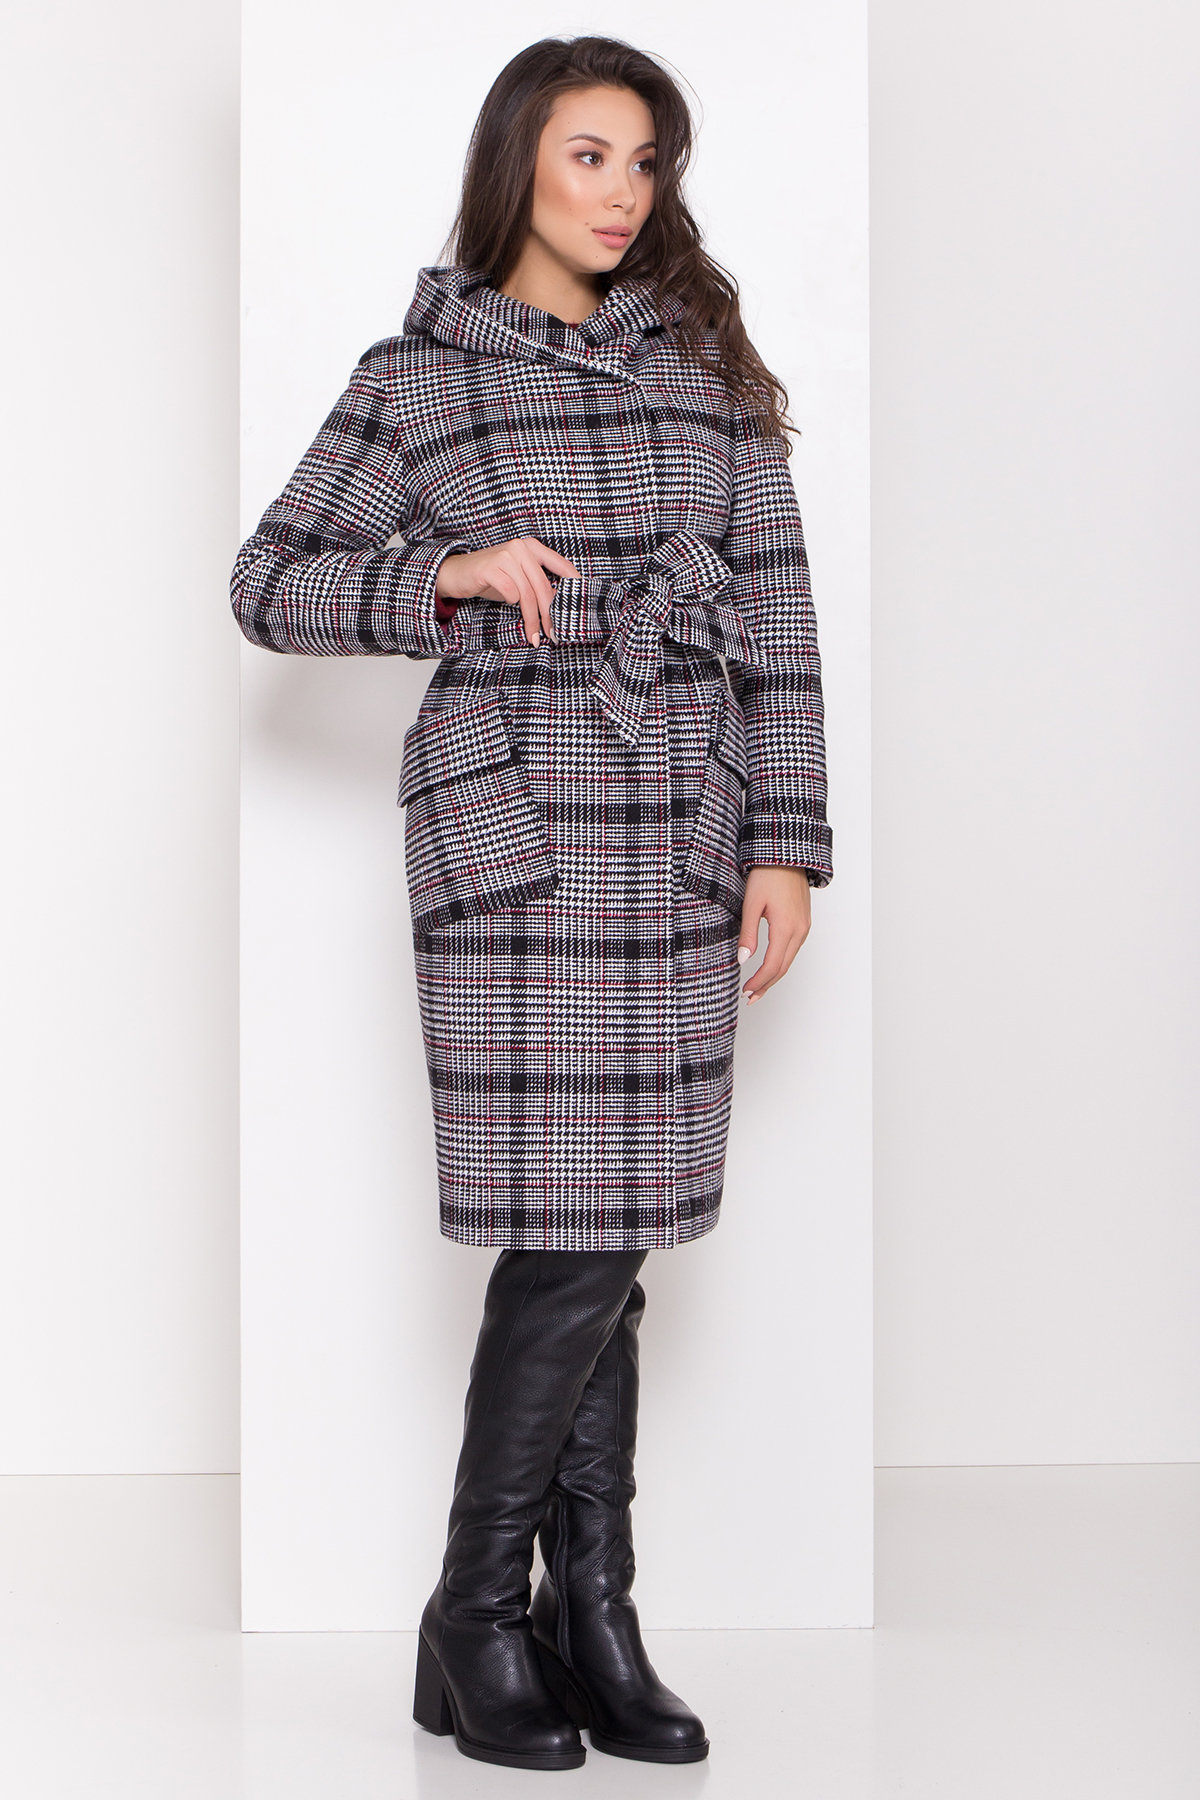 Зимнее пальто женское интернет магазин Украина Зимнее пальто в стильную клетку Анджи 8276